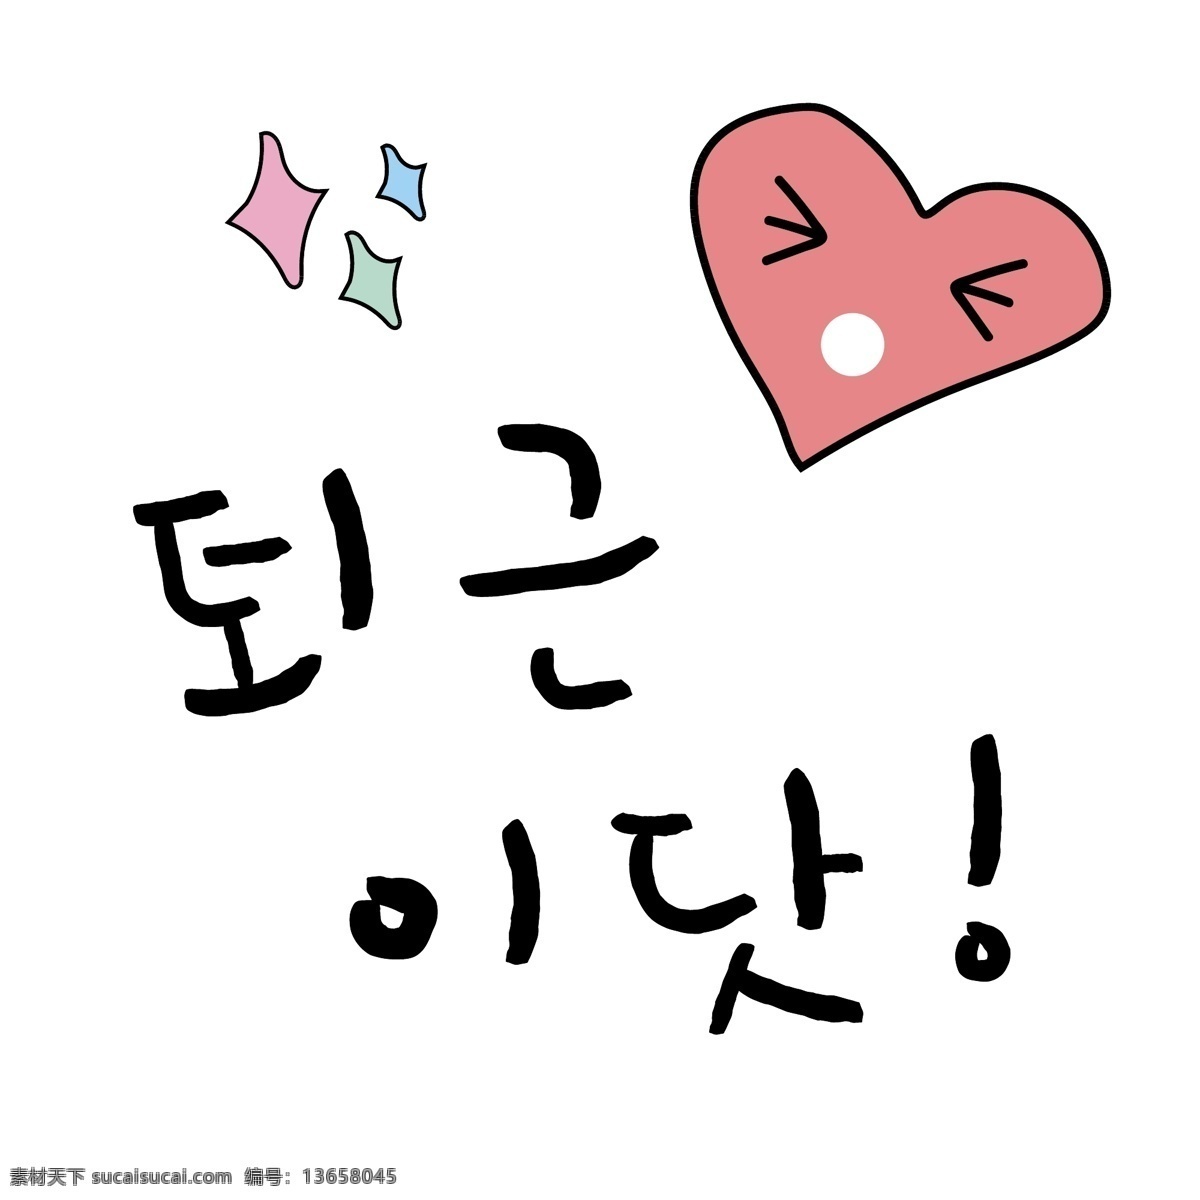 爱心 星星 韩国 常用语 下班 肝药 对话 红色 漫画 小的 向量 日常用语 卡通